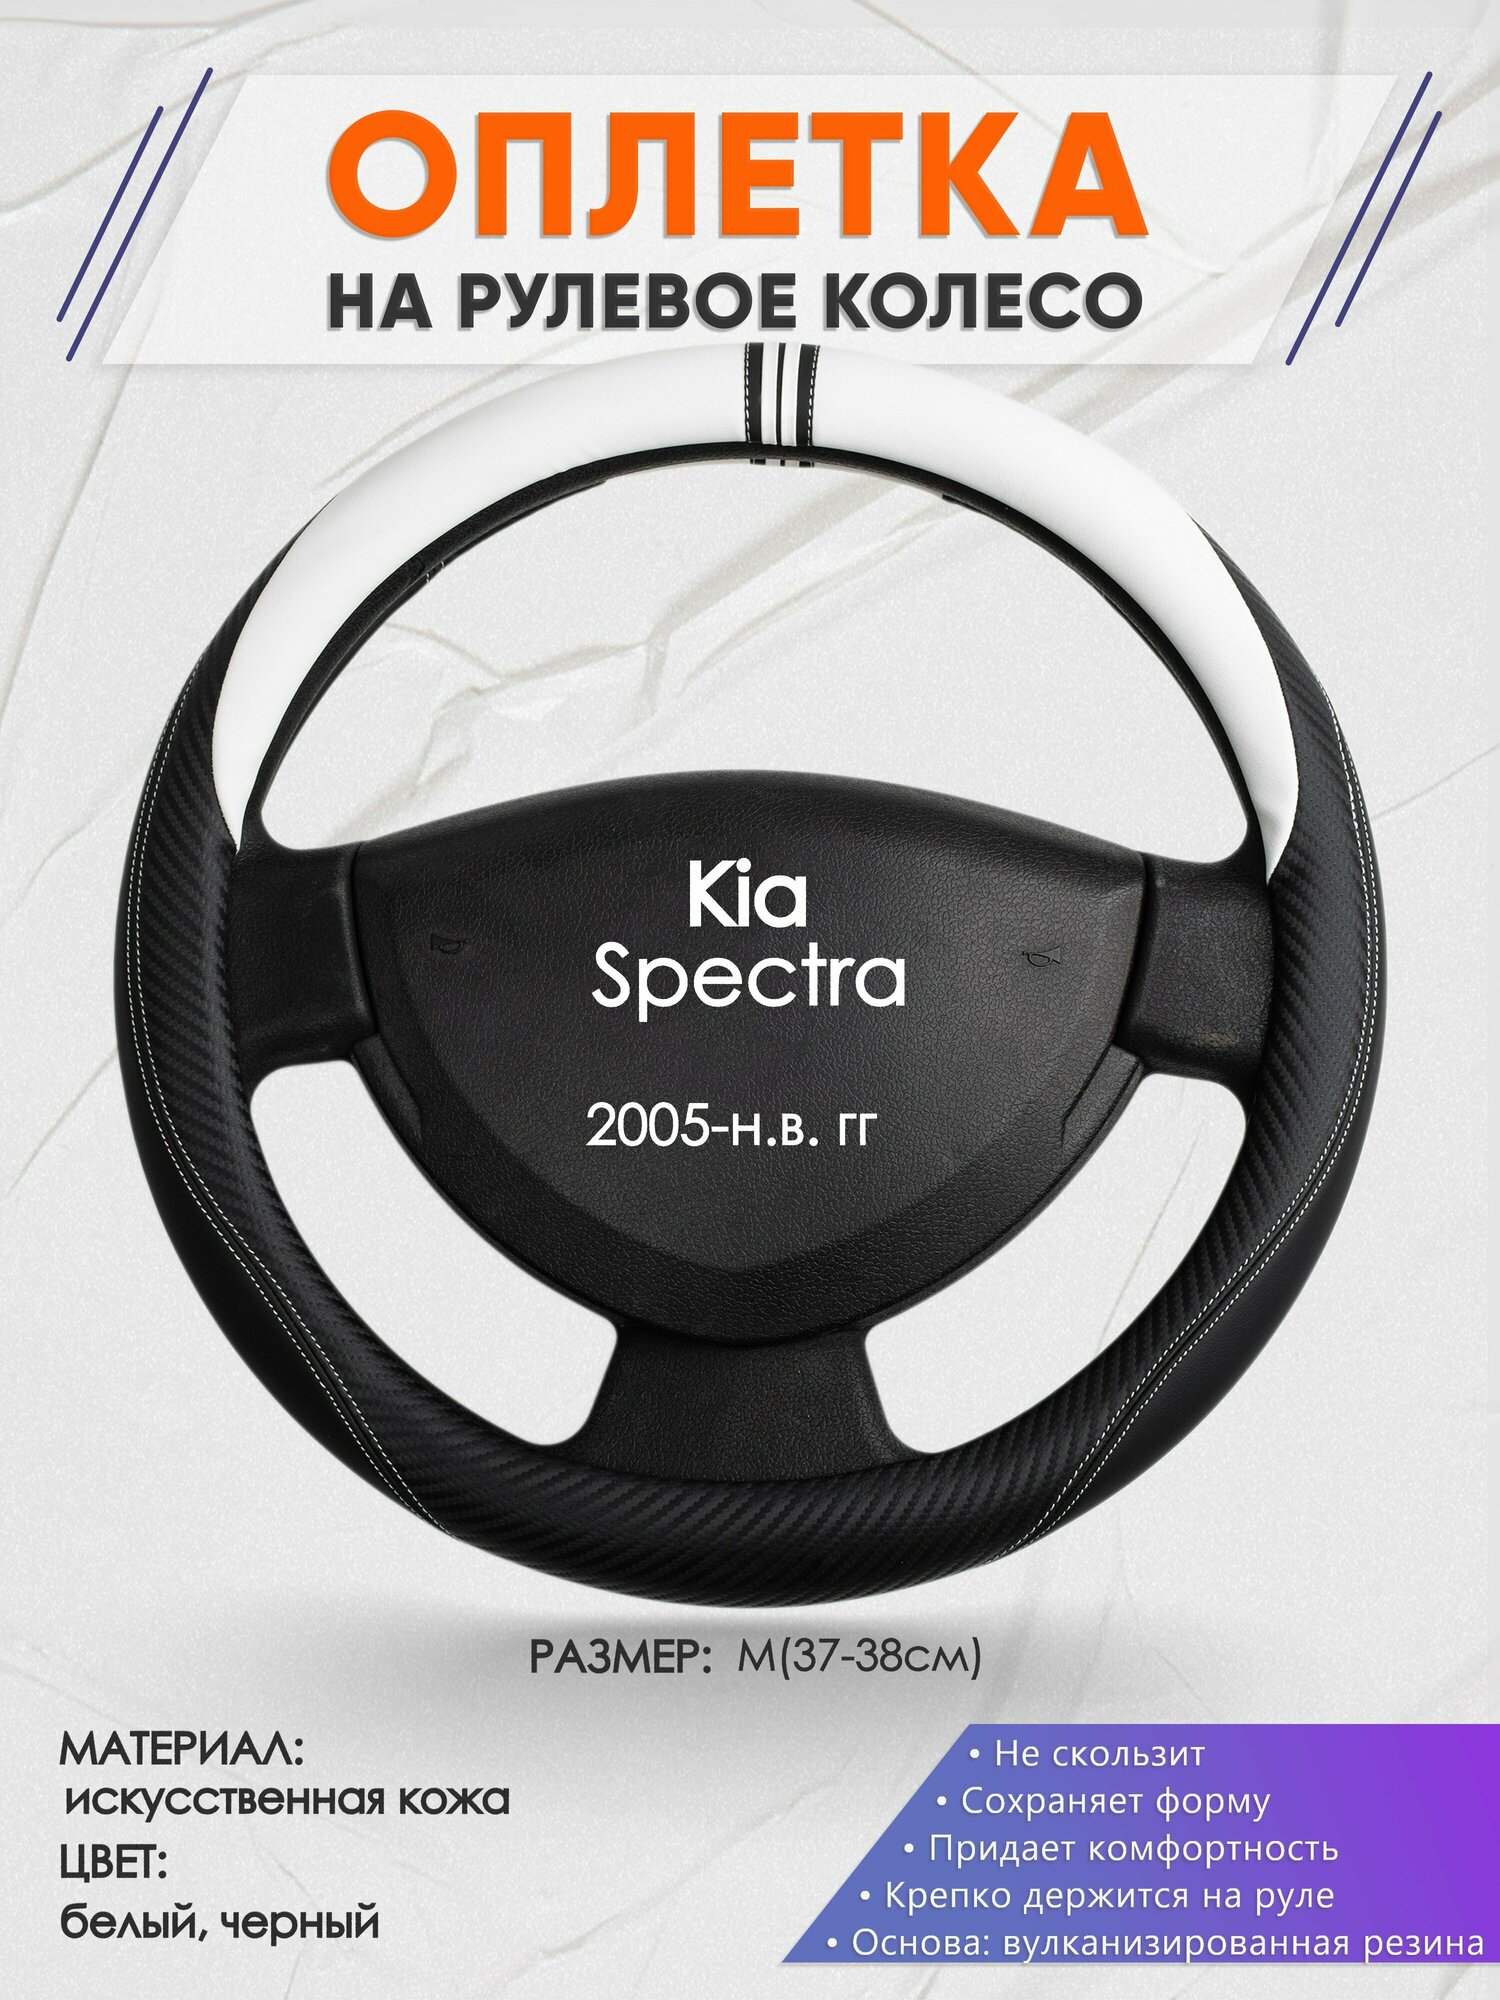 Оплетка на руль для Kia Spectra (Киа Спектра) 2005-н. в M(37-38см) Искусственная кожа 82